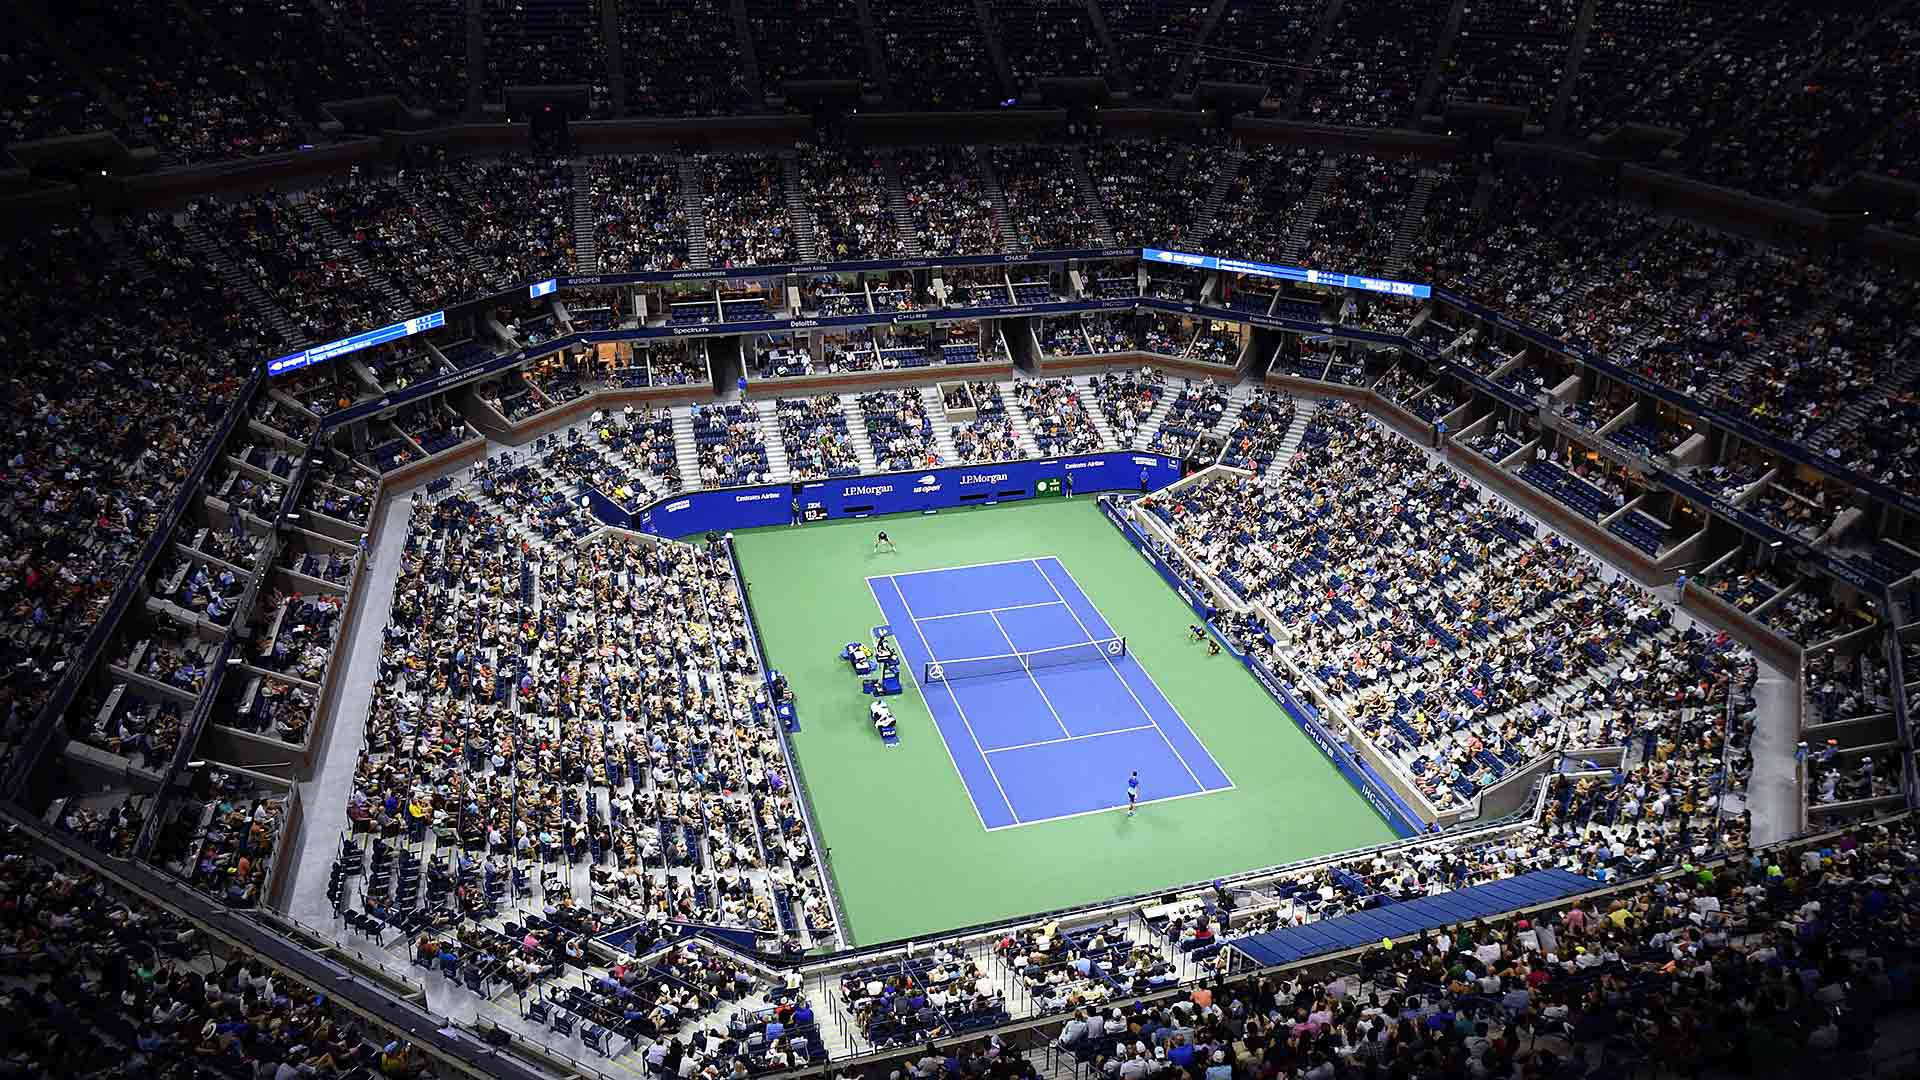 Usopen Tennis Arena - Us Open Tennis Arena Wallpaper